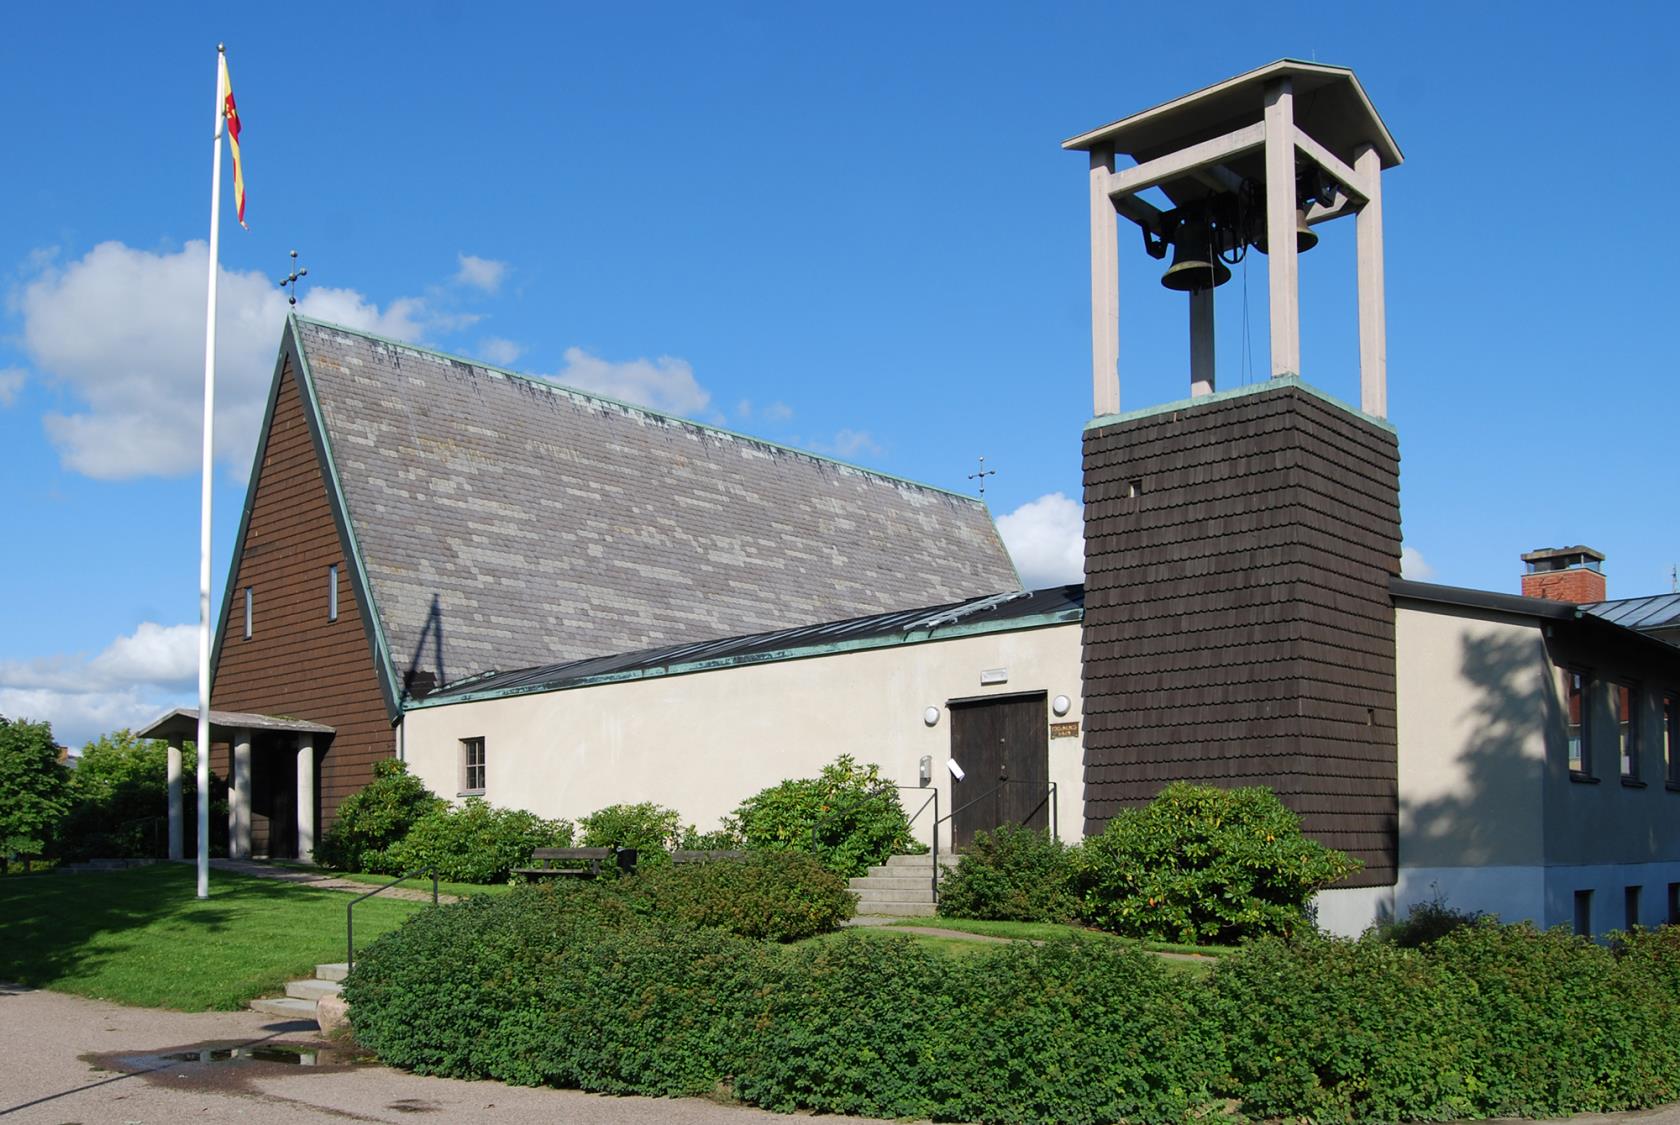 Norrstrands kyrka och klocktorn i solsken.